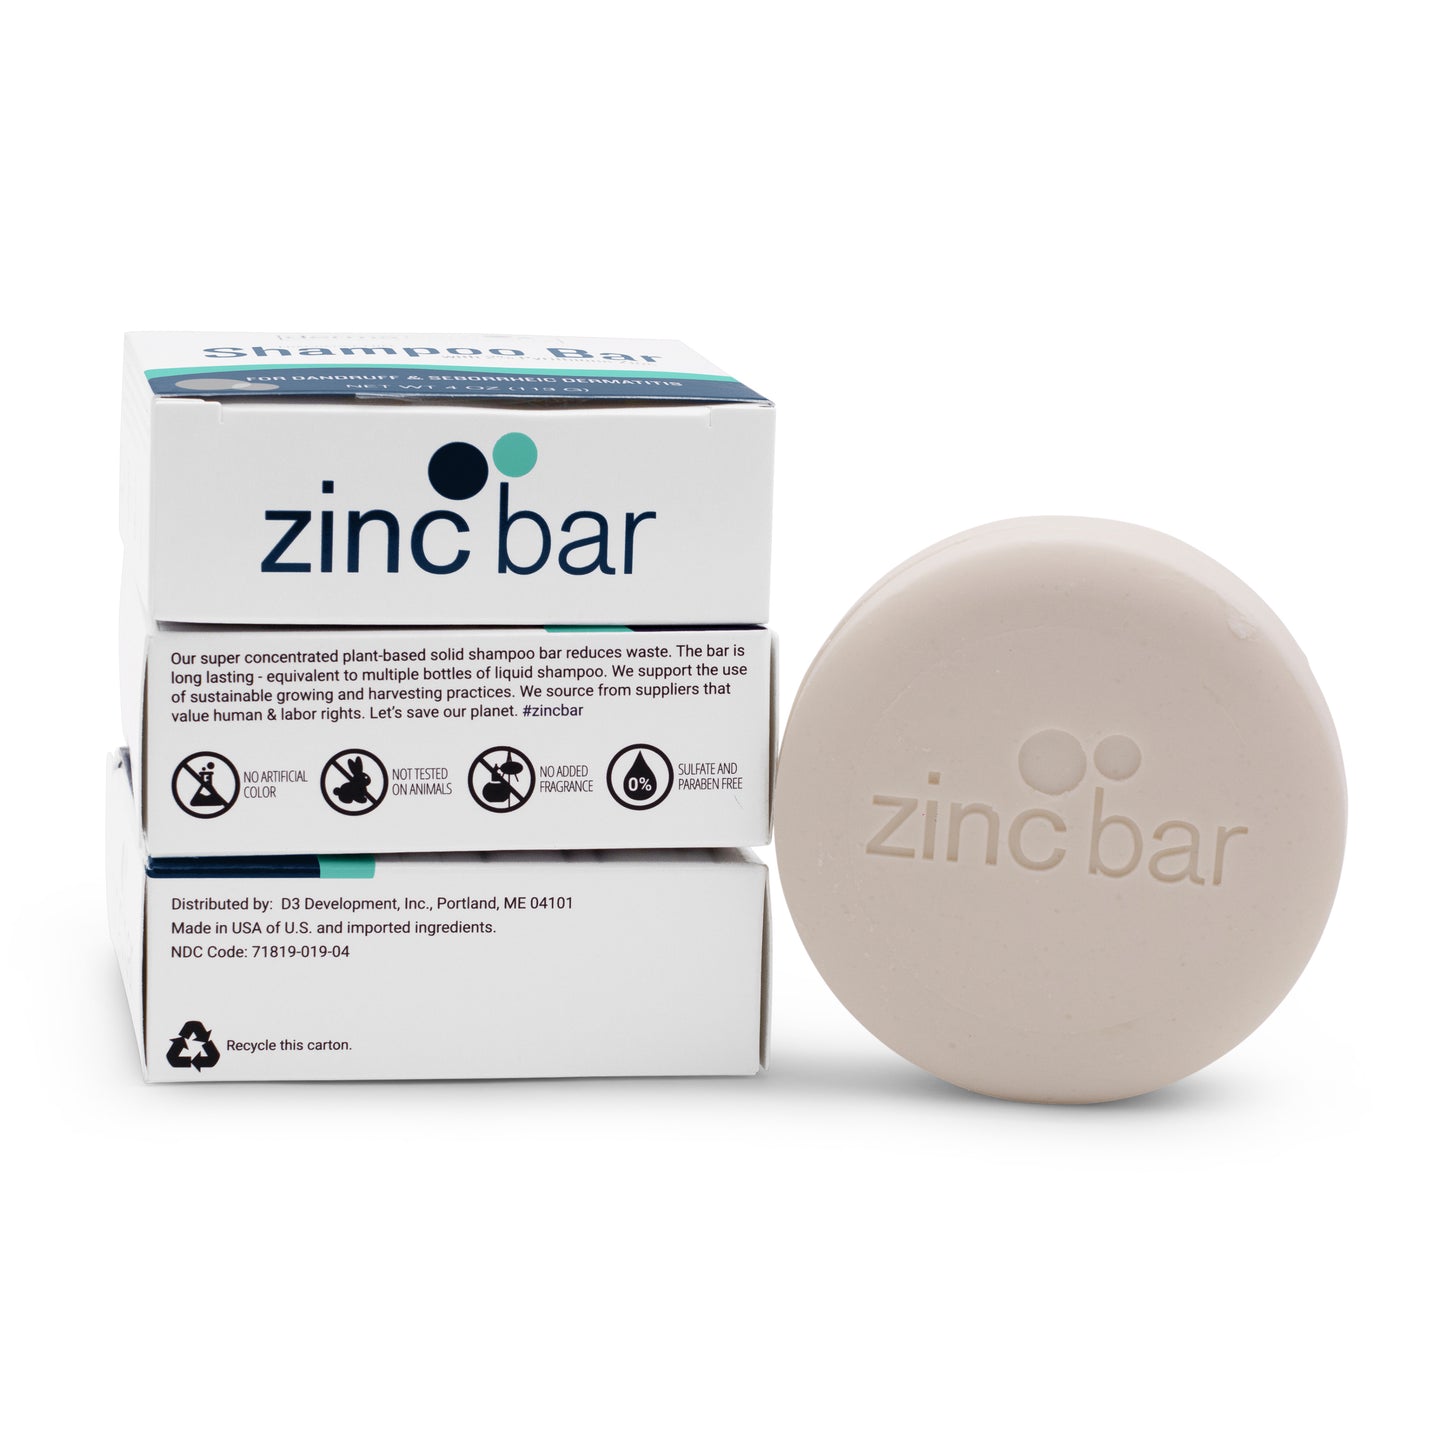 2% Pyrithione Zinc Dandruff & Seborrheic Dermatitis Shampoo Bar - Fragrance-Free - 4 oz